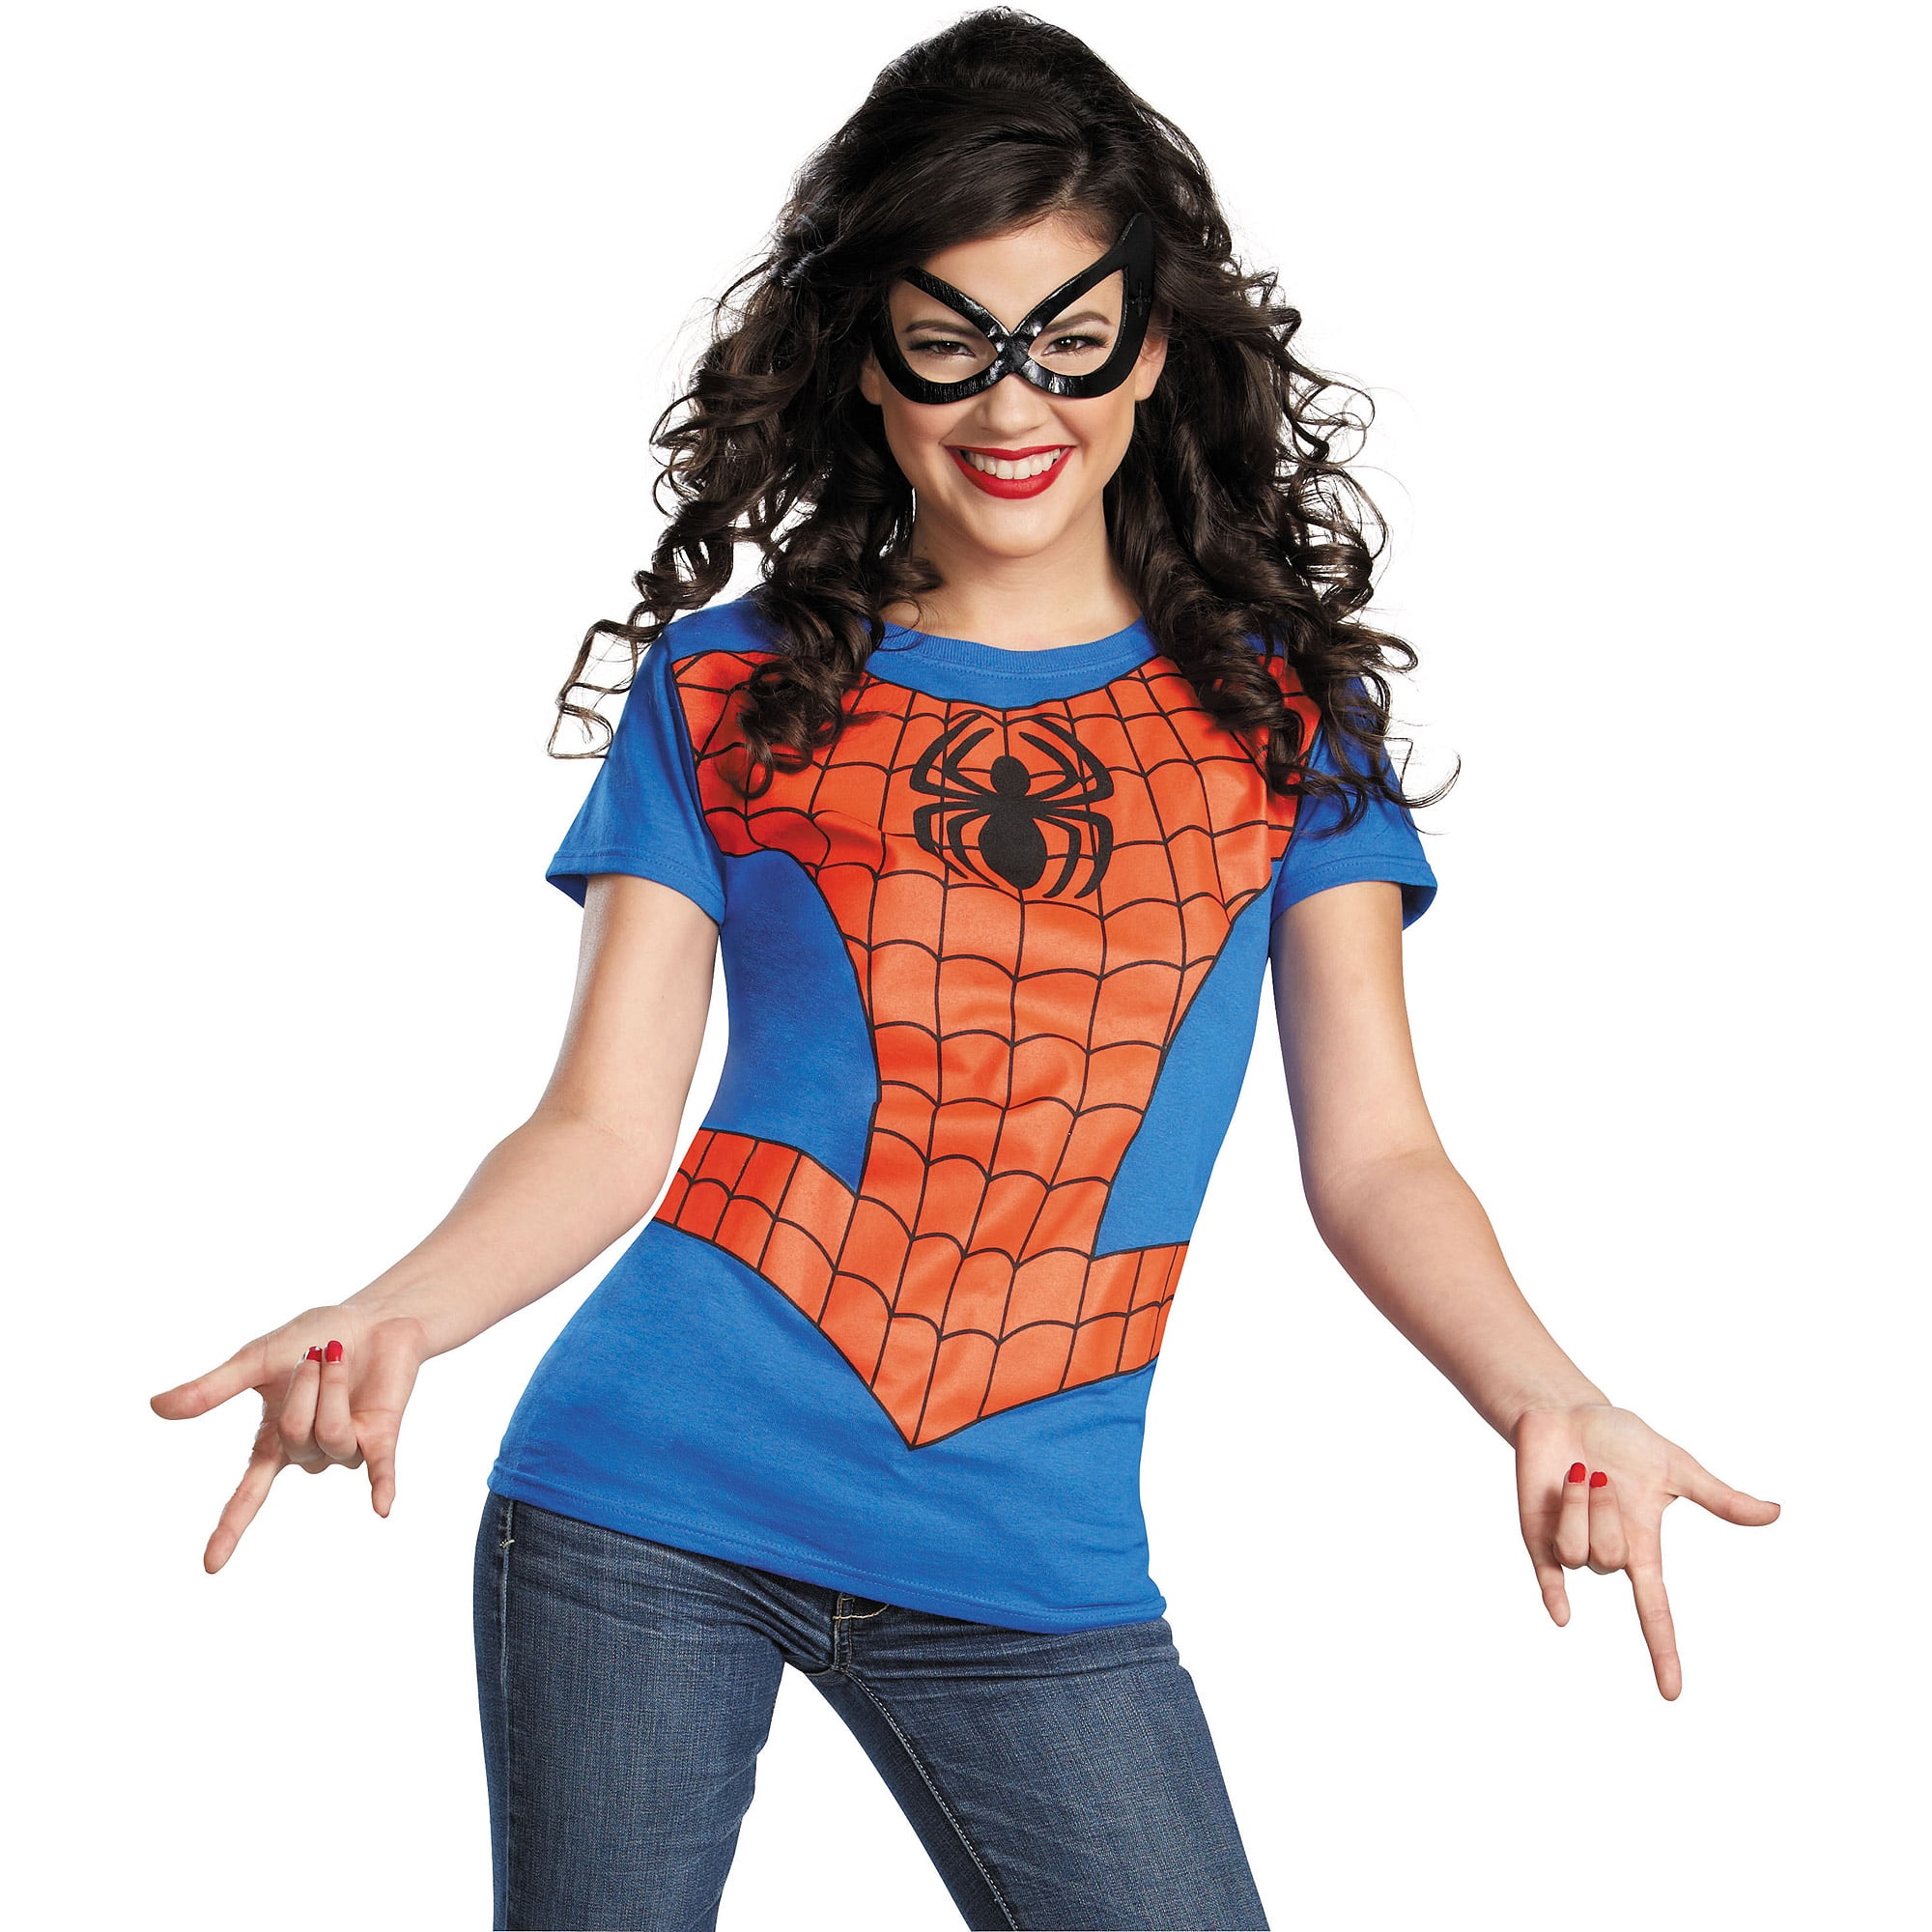 Spider-Girl Women's Adult Halloween Costume - Walmart.com.